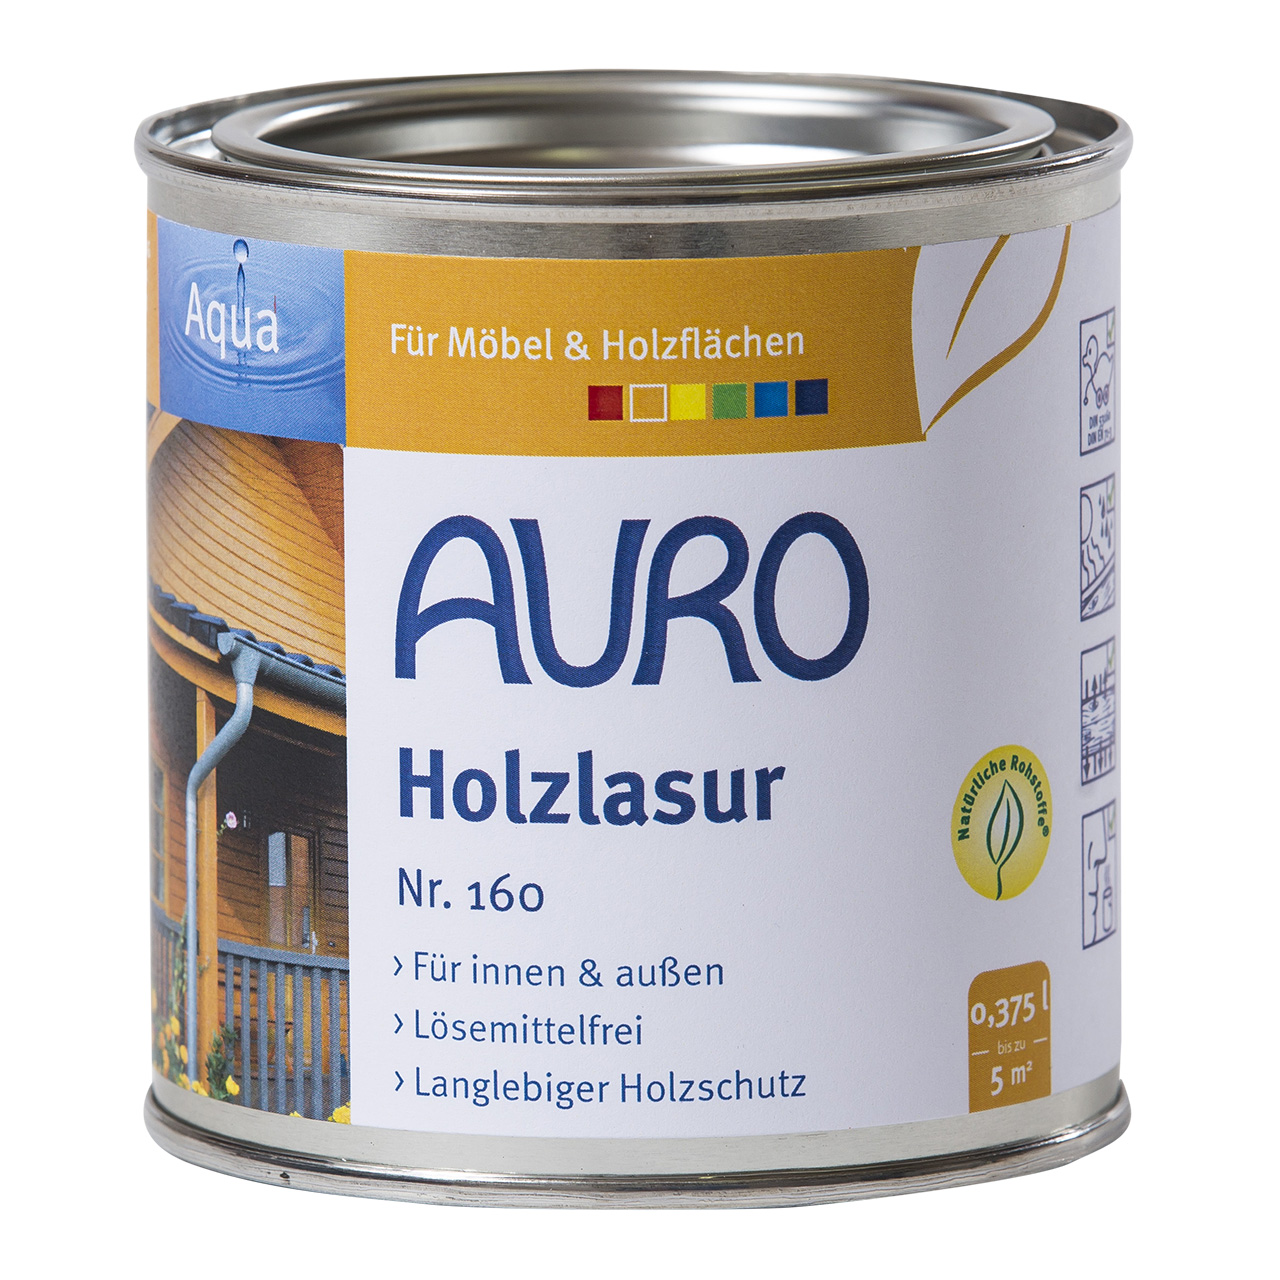 Auro Holzlasur Nr. 160 grau, 0,375ml